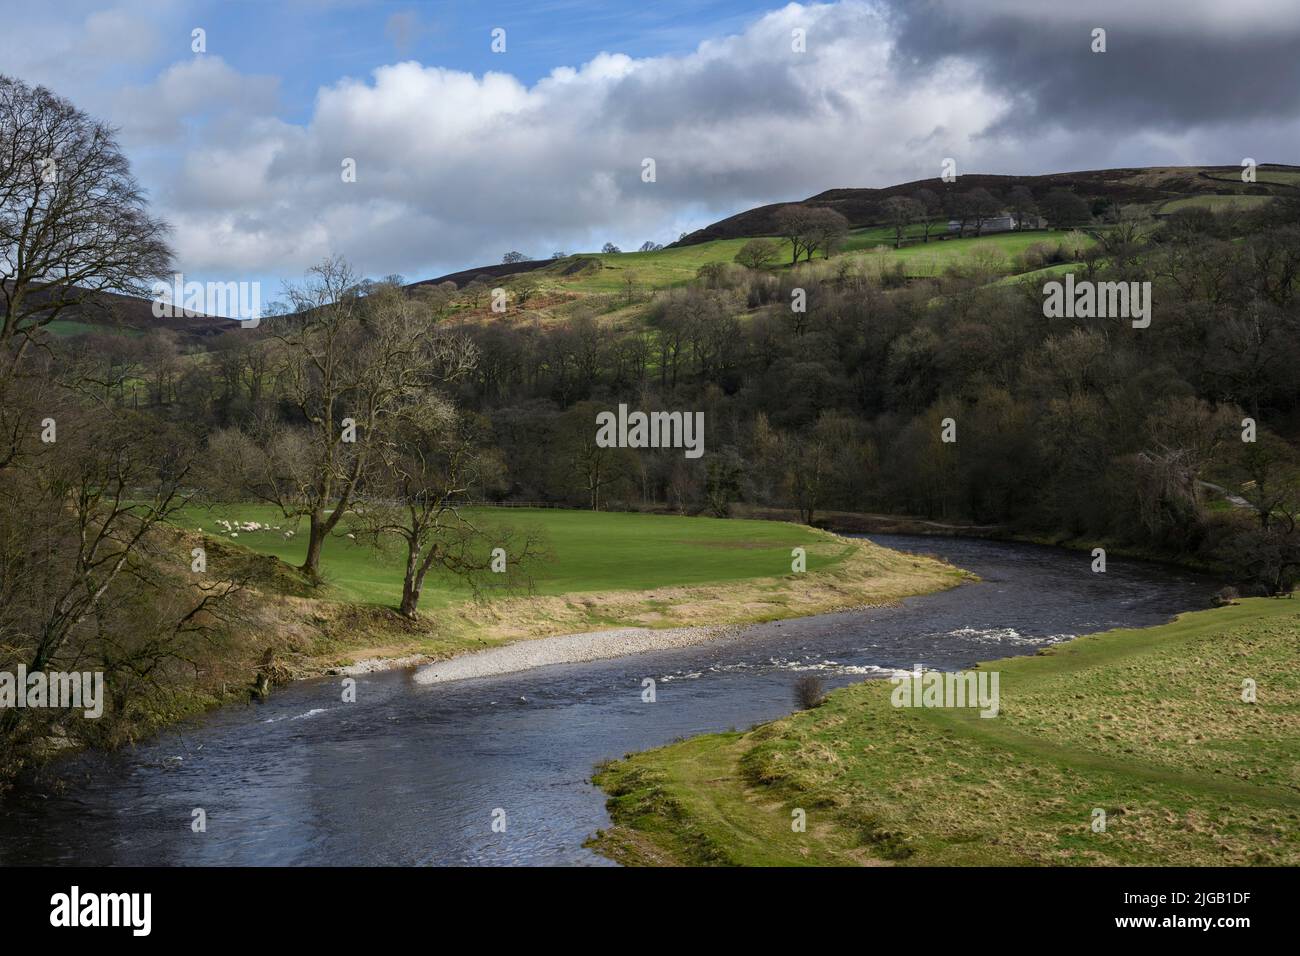 Río Wharfe en paisaje rural escénico (valle inclinado, colinas soleadas, orillas del río) - Bolton Abbey Estate, Wharfedale, Yorkshire Dales, GB, Reino Unido. Foto de stock